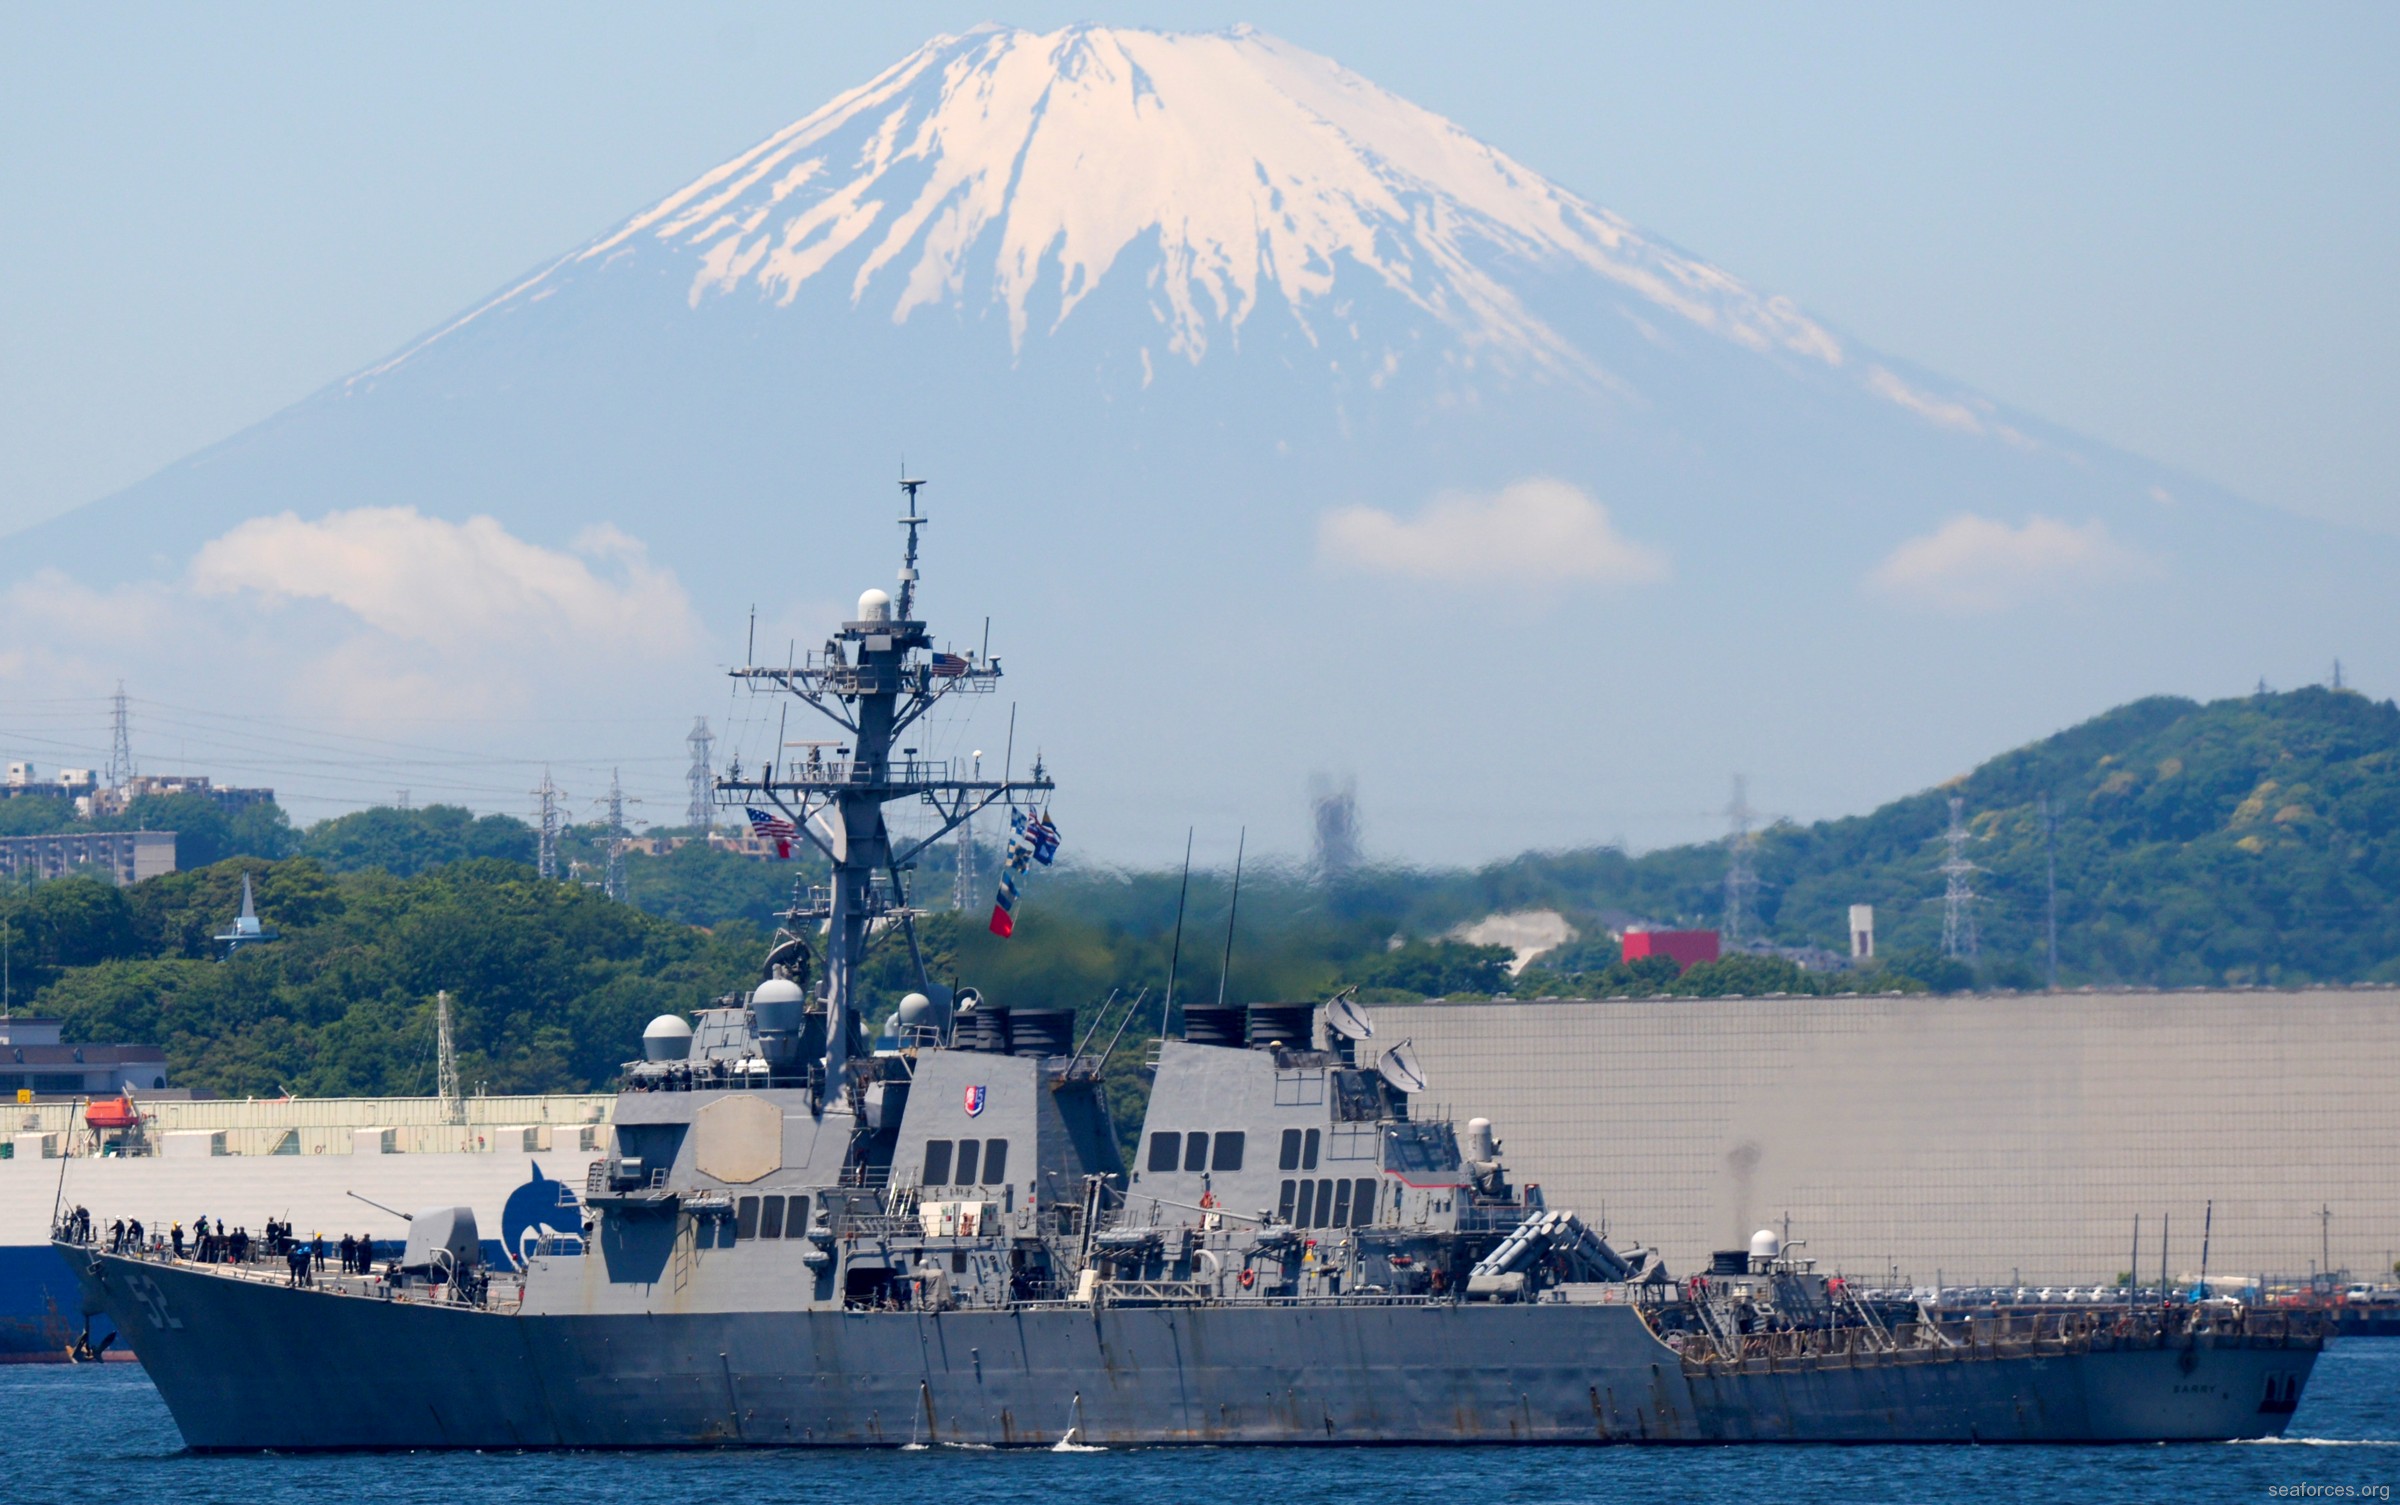 ddg-52 uss barry guided missile destroyer us navy 22 yokosuka japan mount fuji